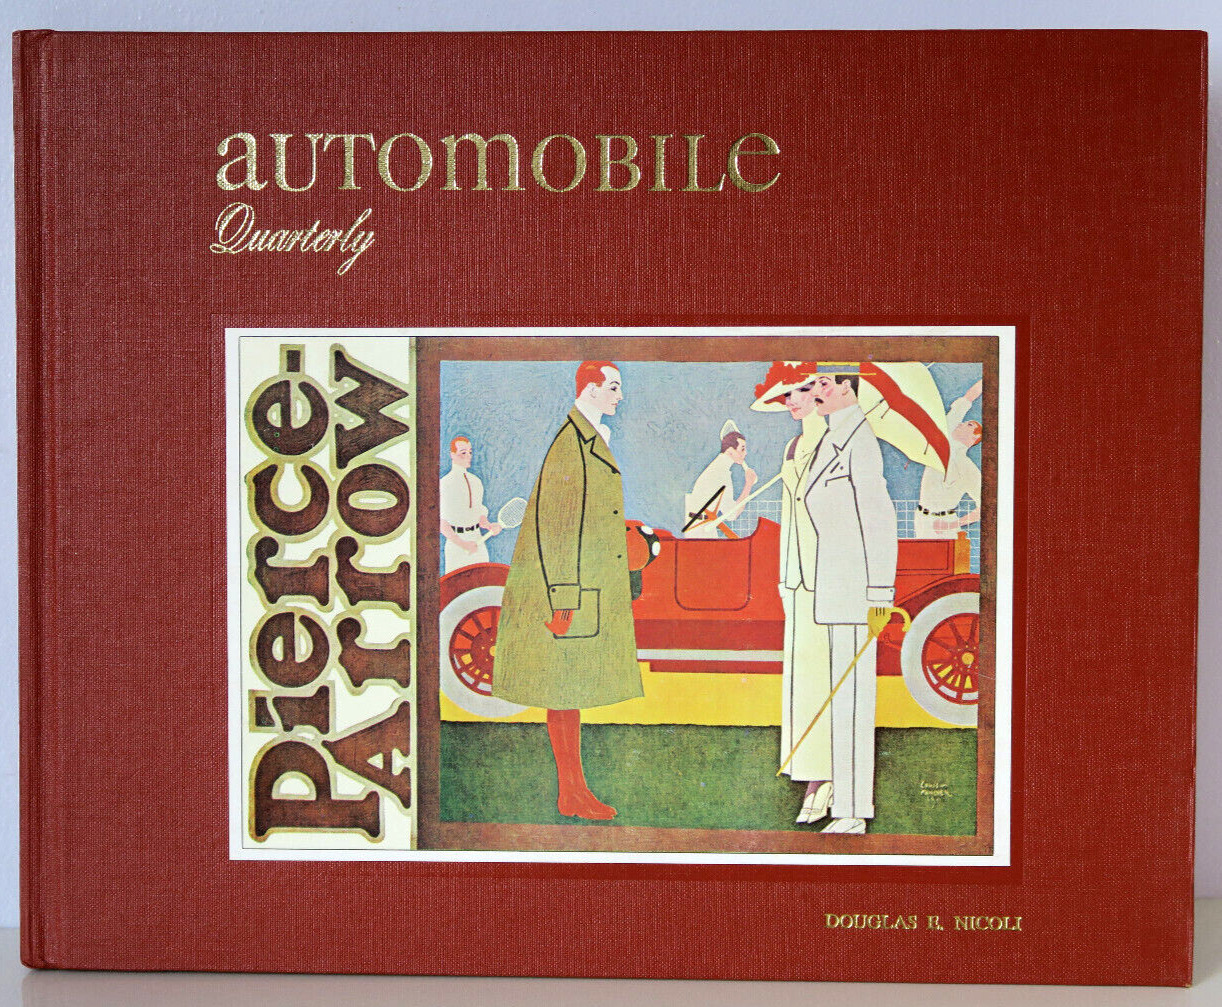 Automobile Quarterly Vol. 14 No 3 -3rd Qtr 1976 -Cobra, Pierce-Arrow Artists